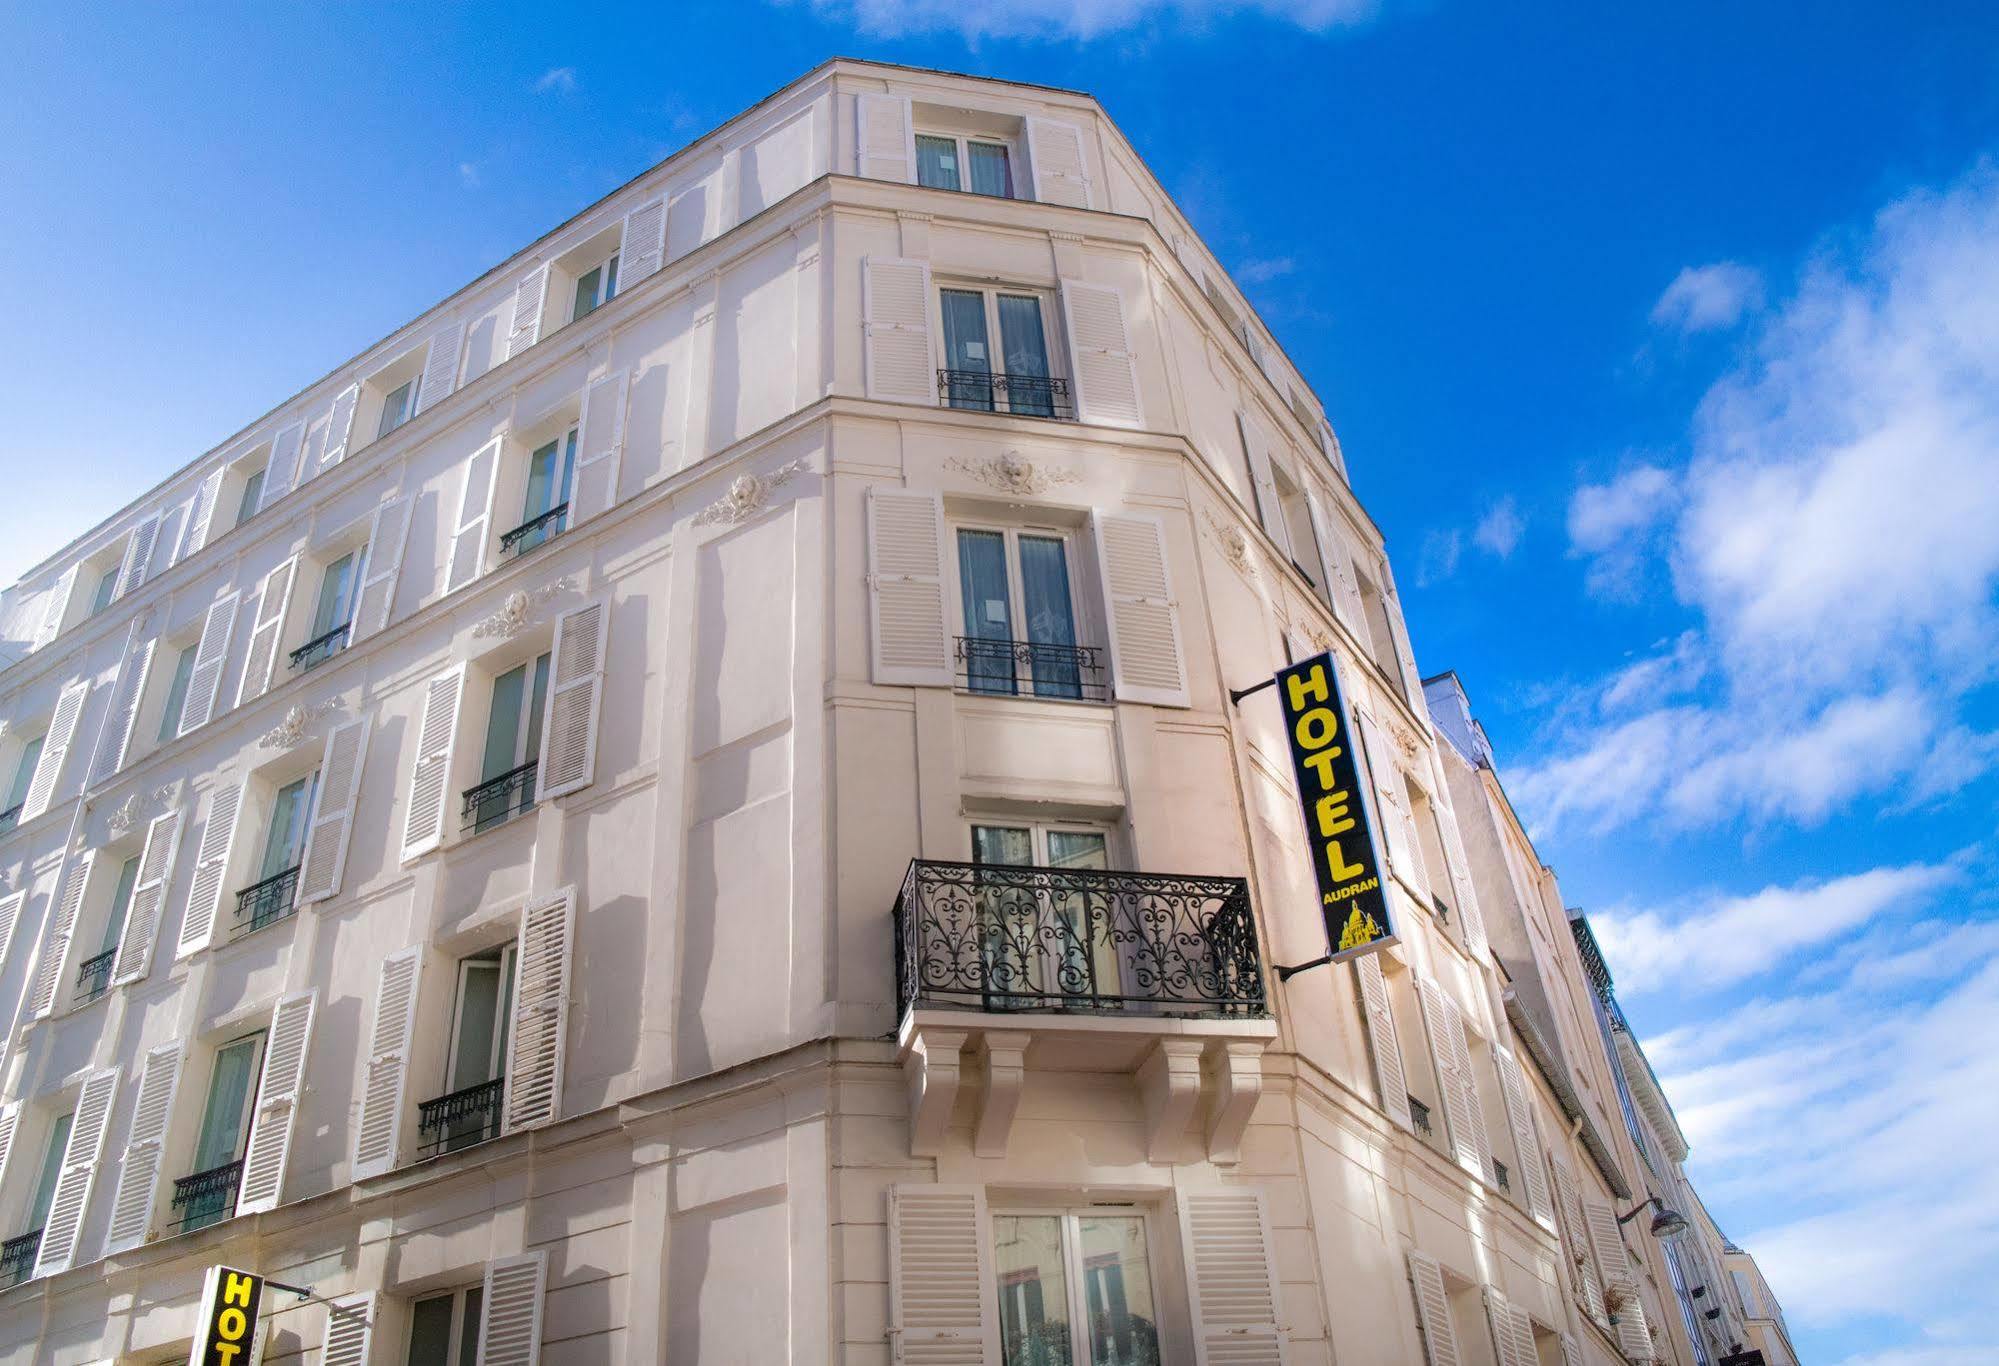 Hotel Audran Paris Exterior foto